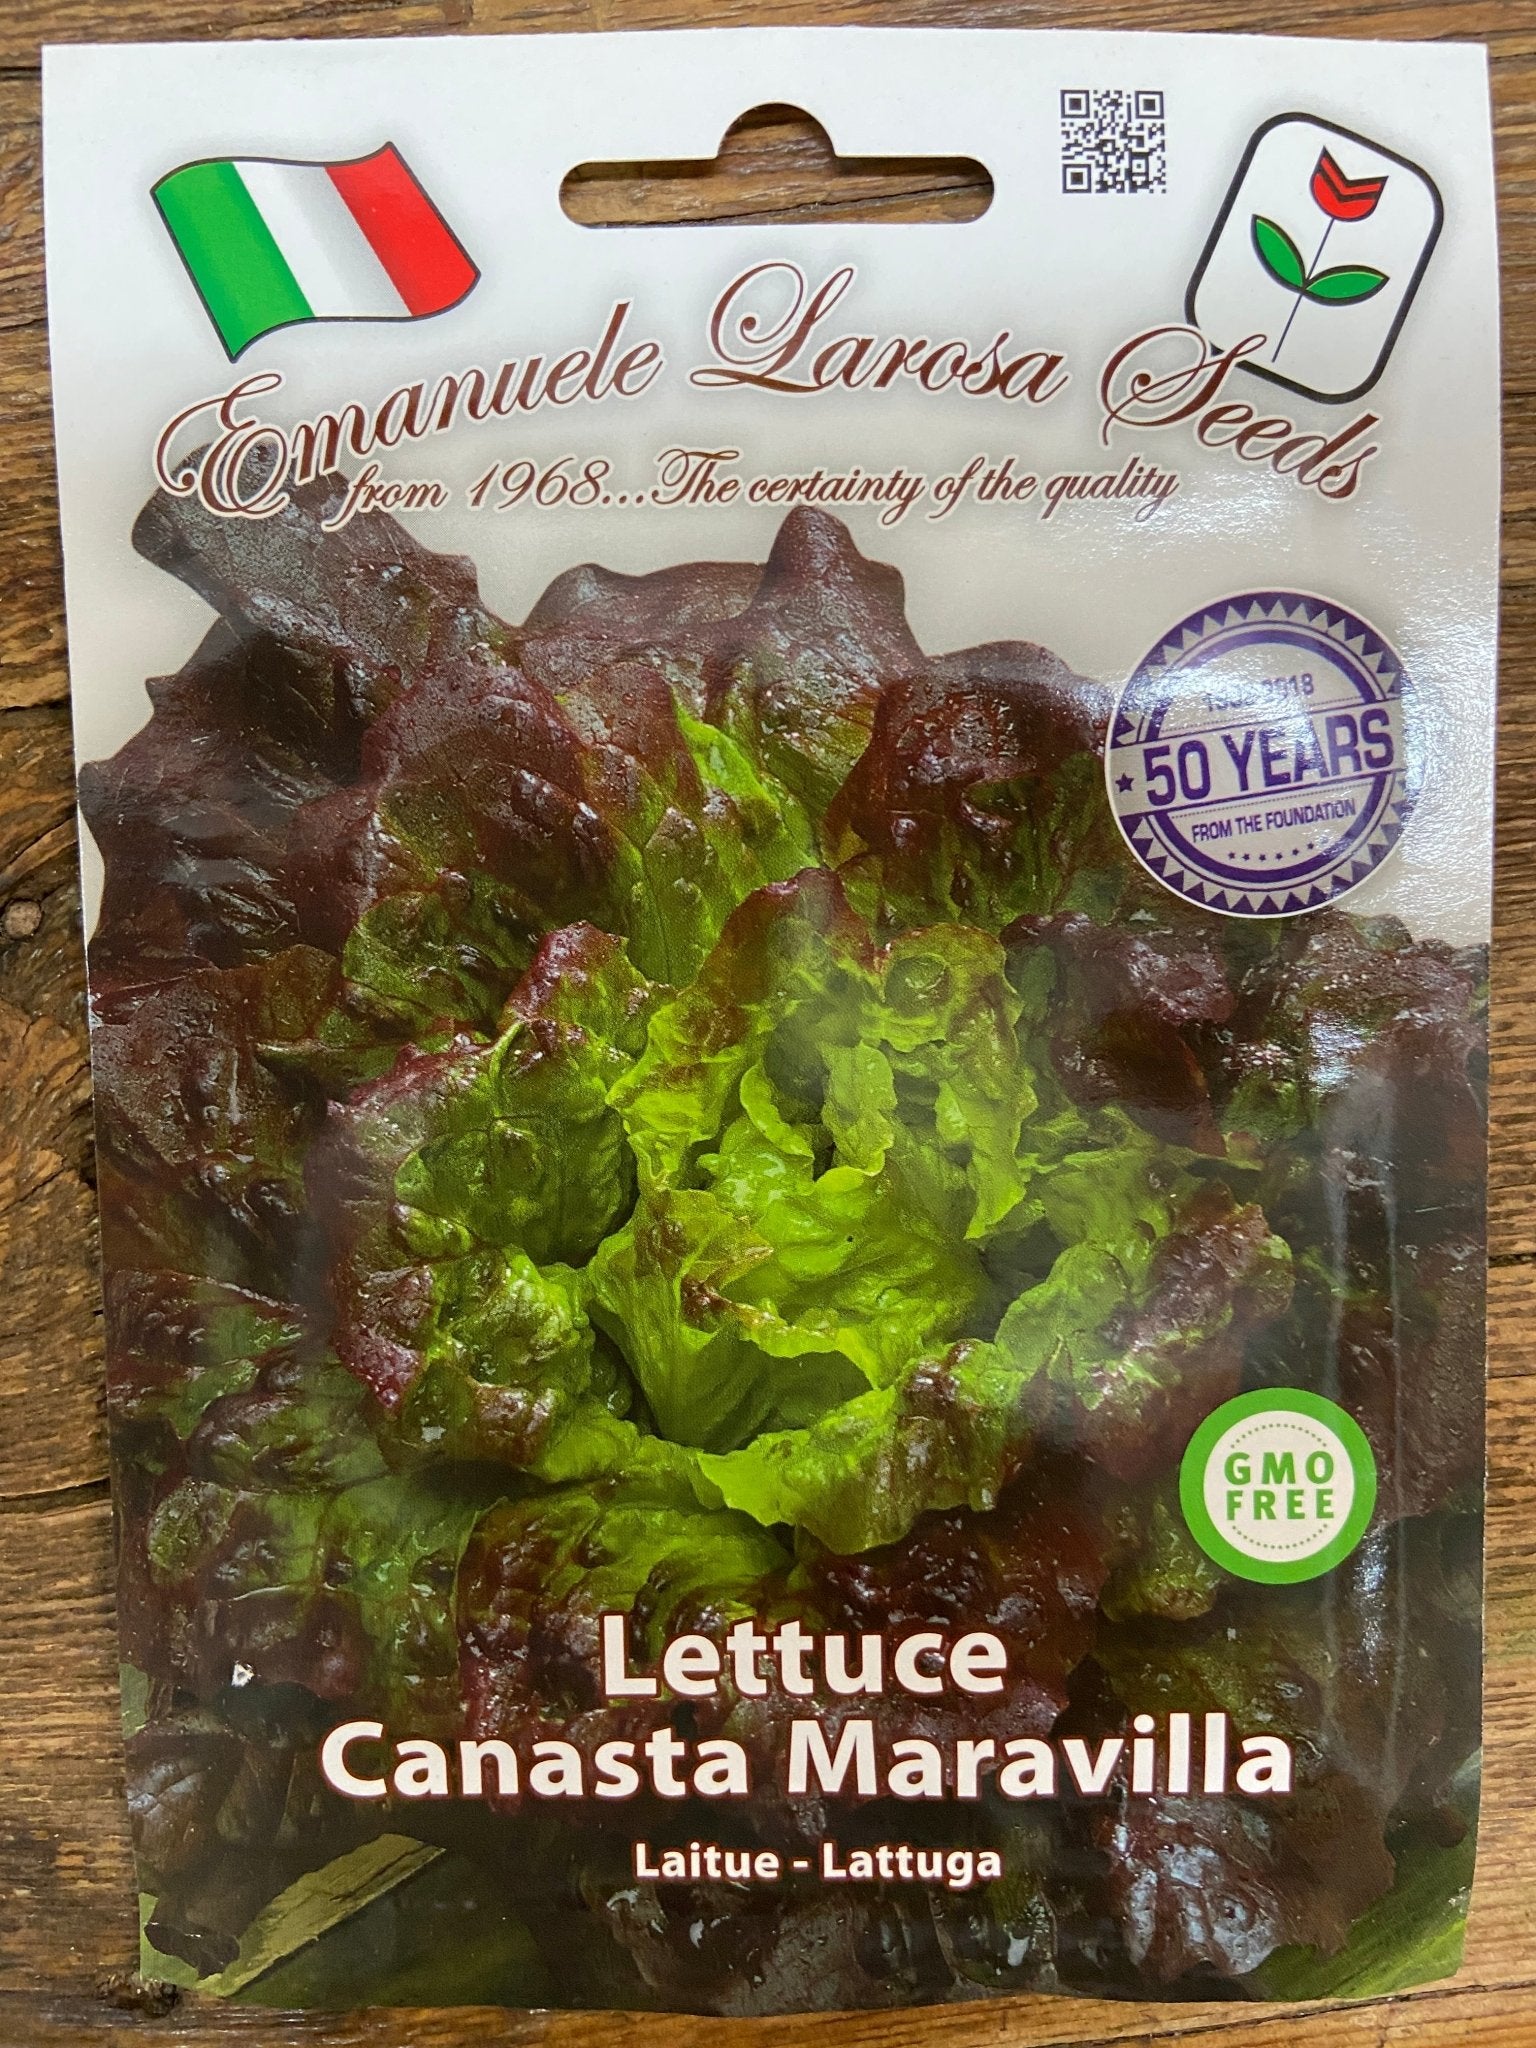 Lettuce Canasta Maravilla